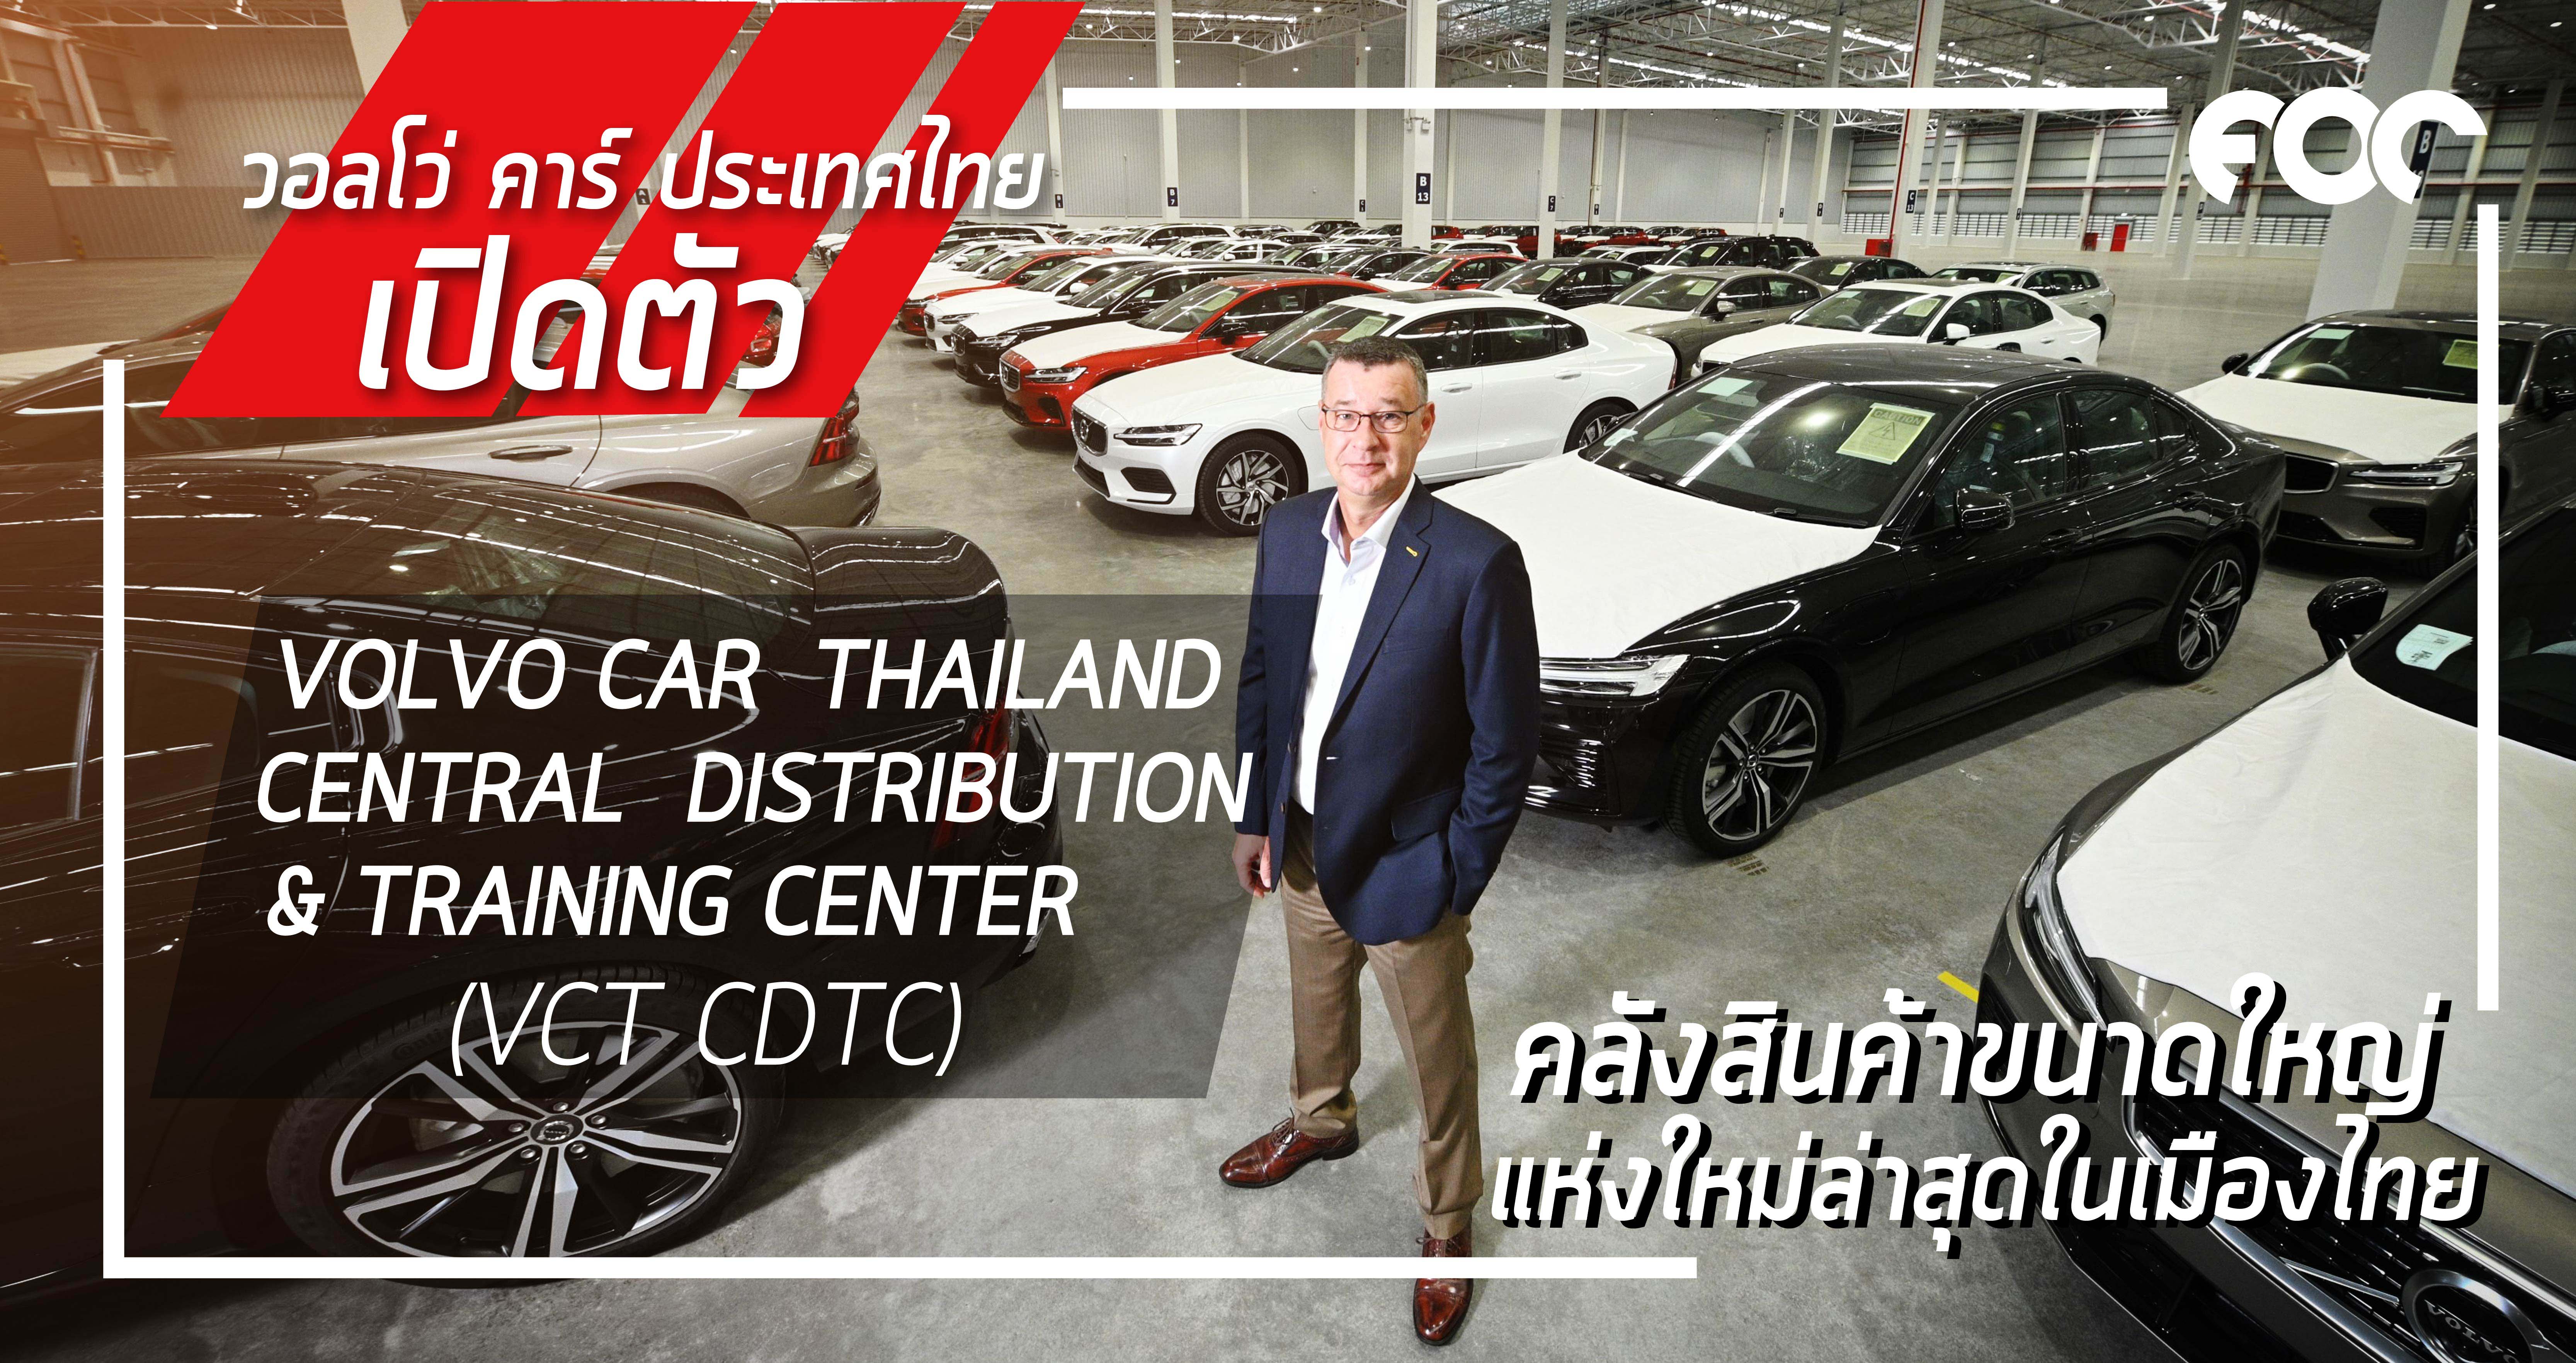 วอลโว่ คาร์ ประเทศไทย ทุ่มงบกว่า 1,000 ล้านบาท ผุดคลังสินค้าขนาดใหญ่แห่งใหม่ล่าสุดในเมืองไทย “VOLVO CAR THAILAND CENTRAL DISTRIBUTION  & TRAINING CENTER (VCT CDTC)” 